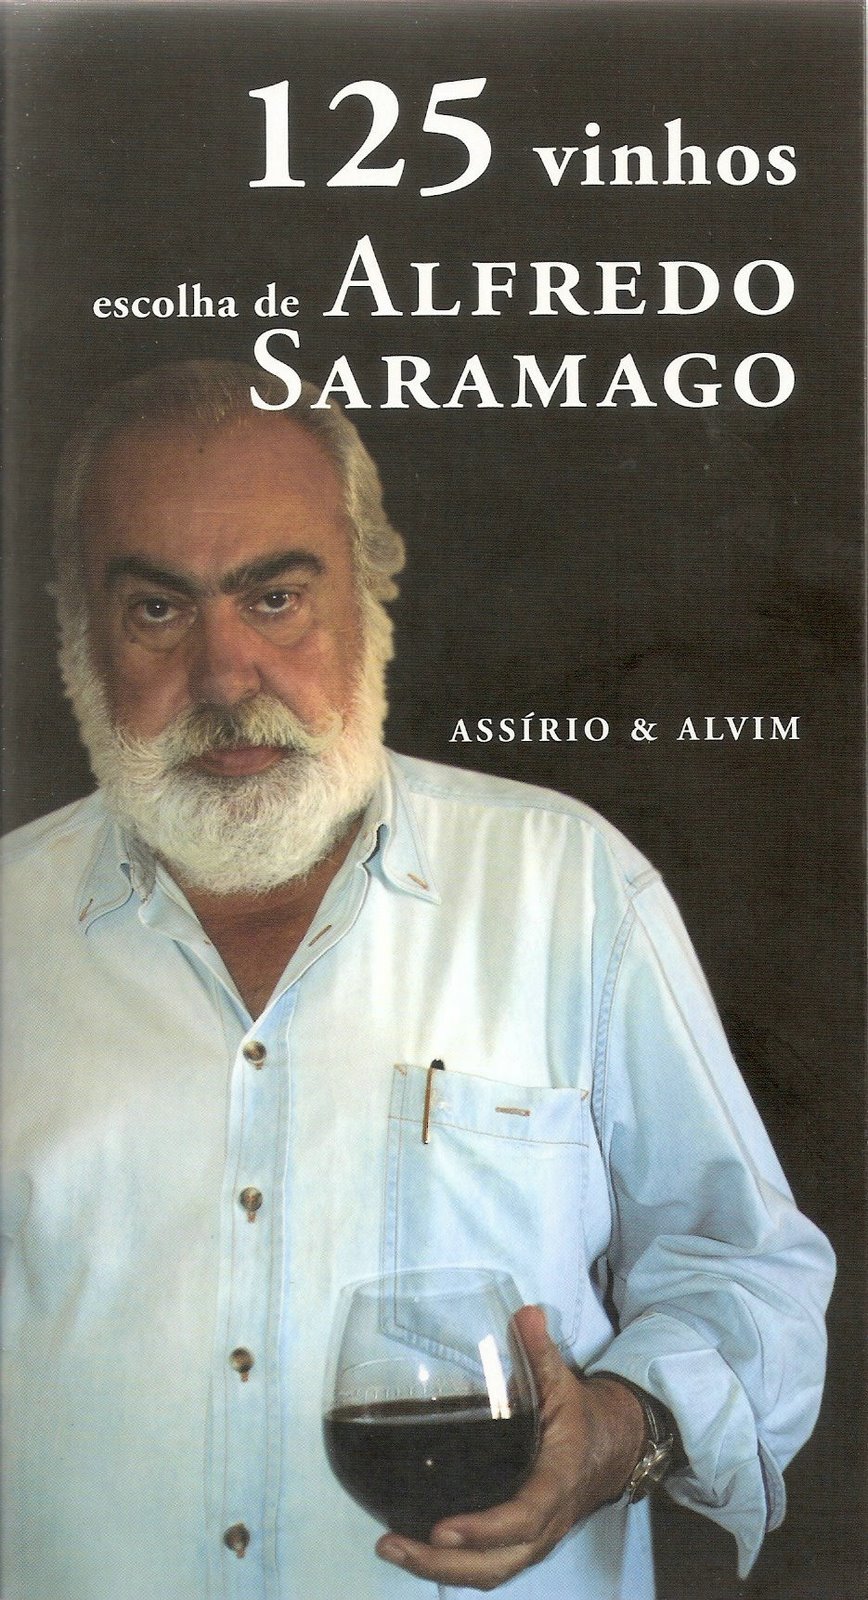 [Saramago+Vinhos.jpg]